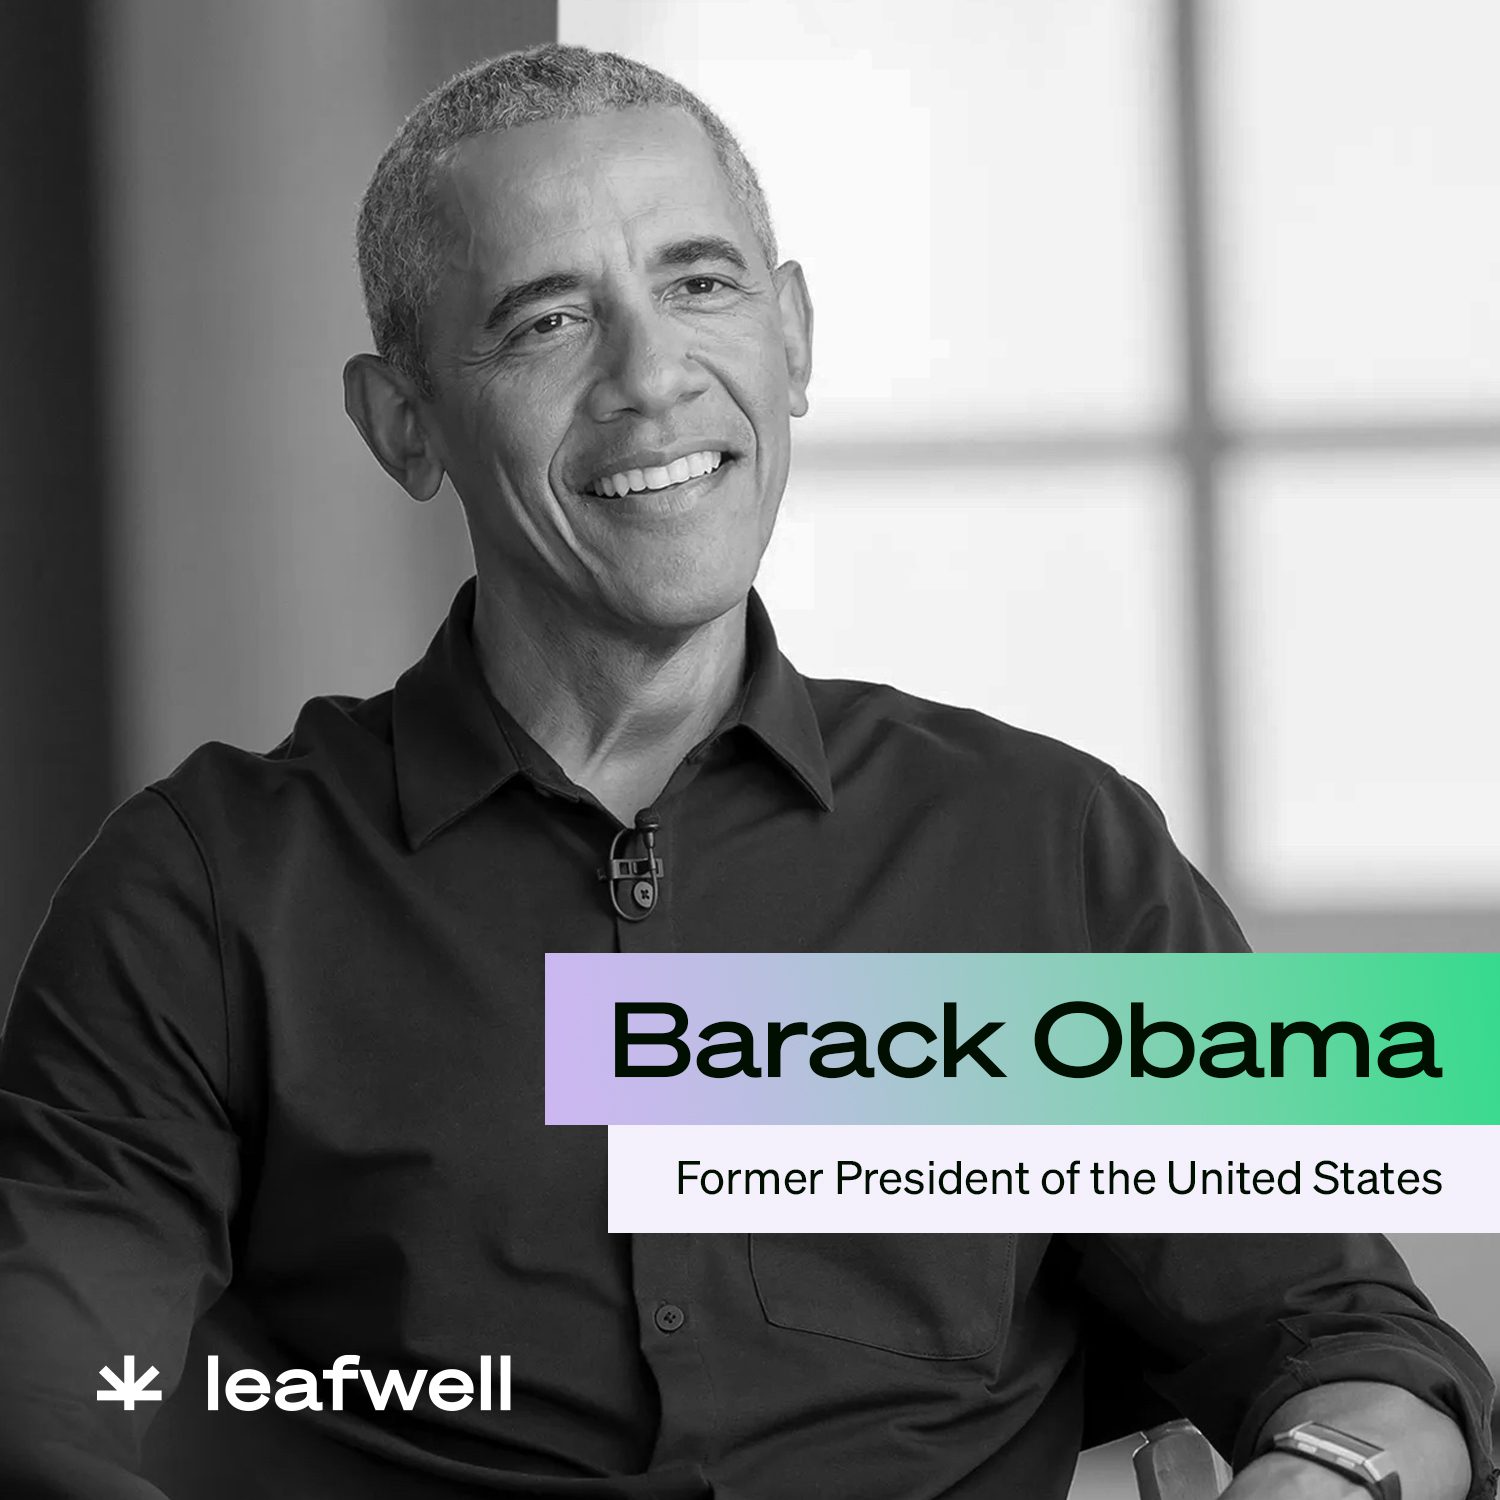 Former Pres Barack Obama sitting with a smile